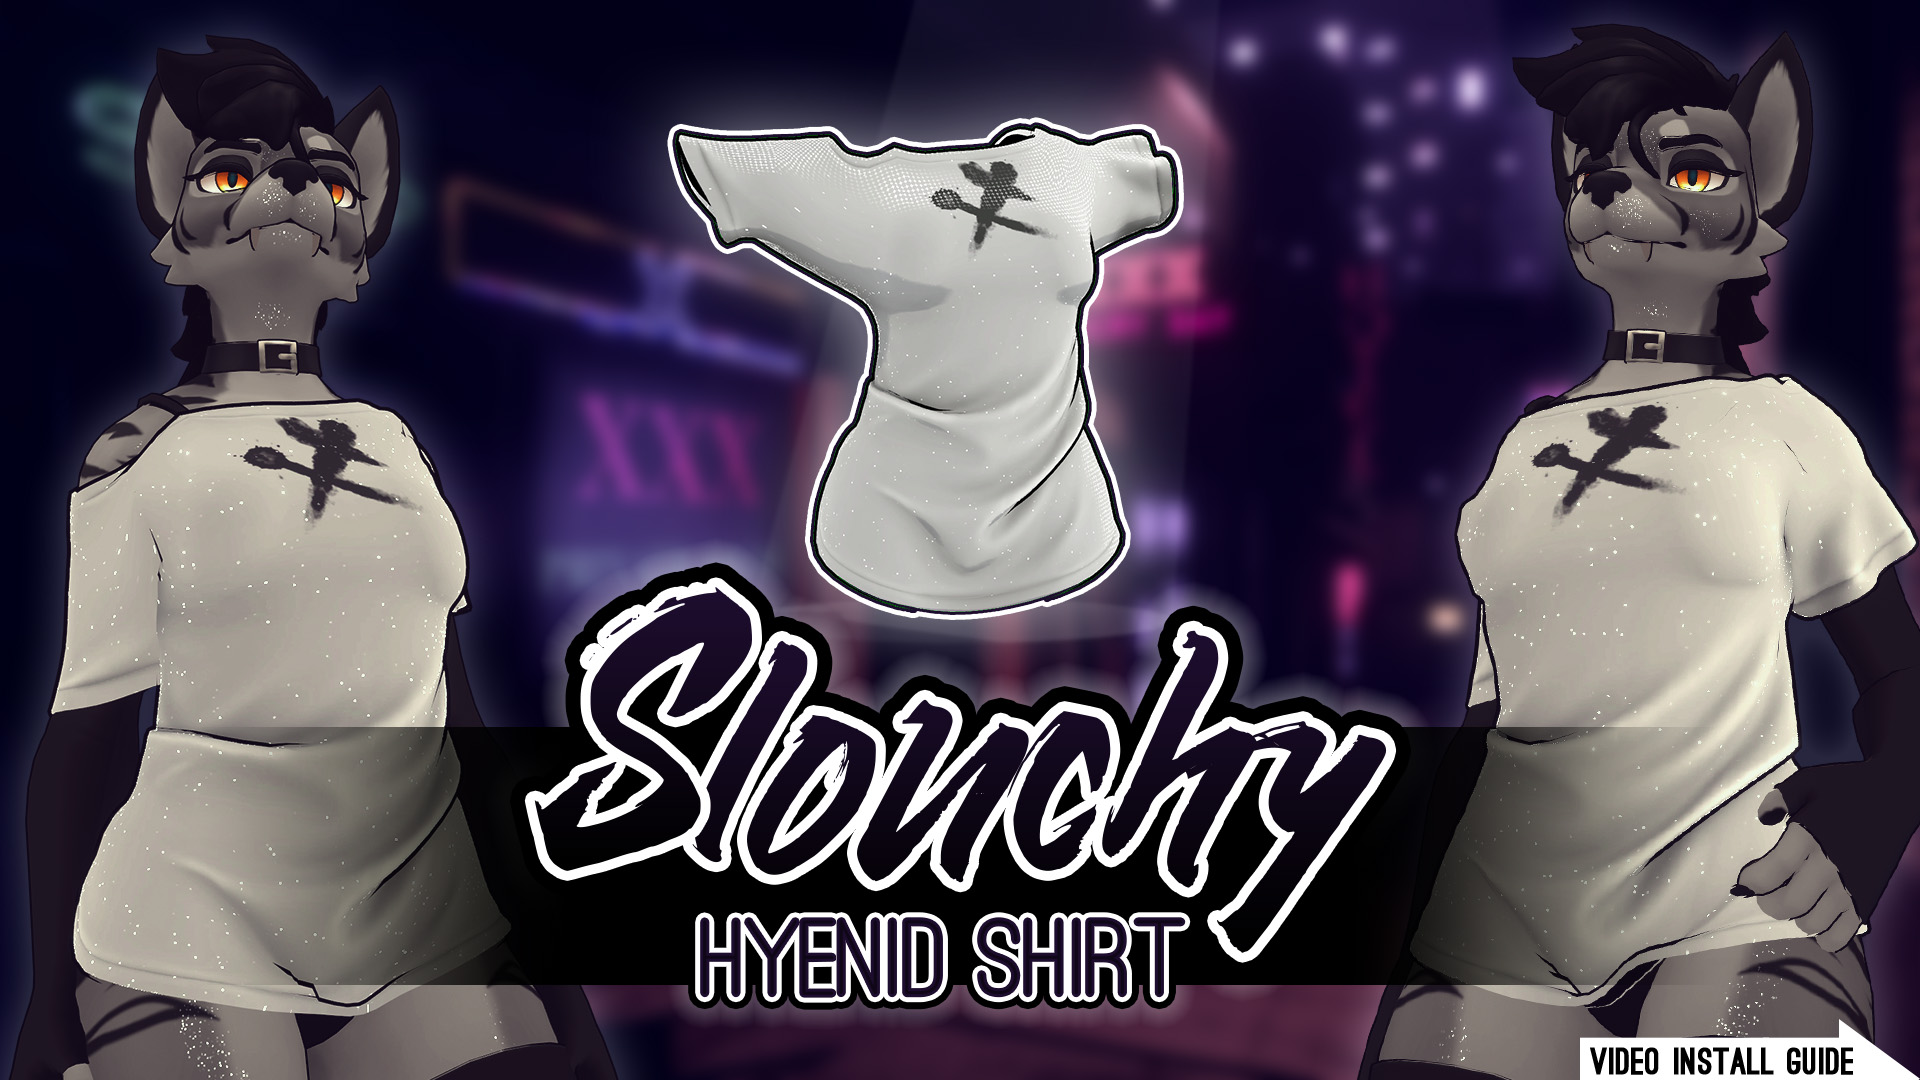 VRChat Slouchy Hyenid Shirt